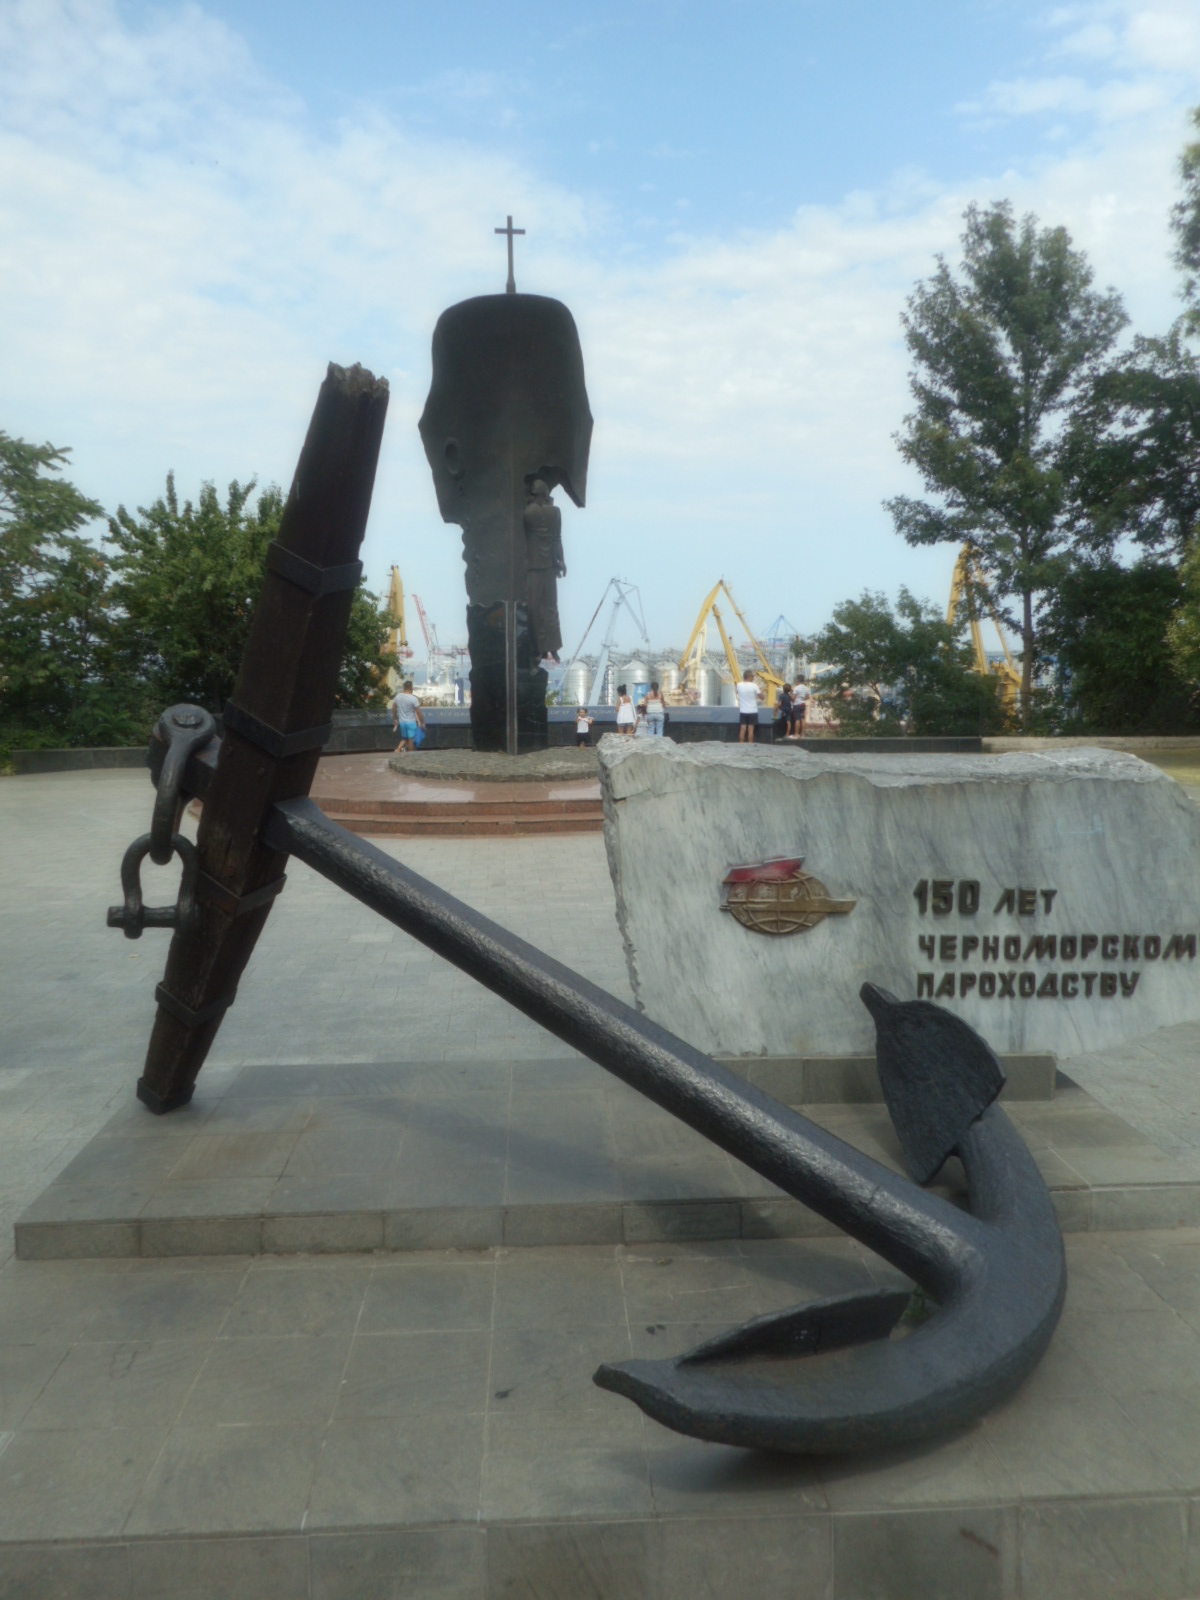 Památník černomořské paroplavby